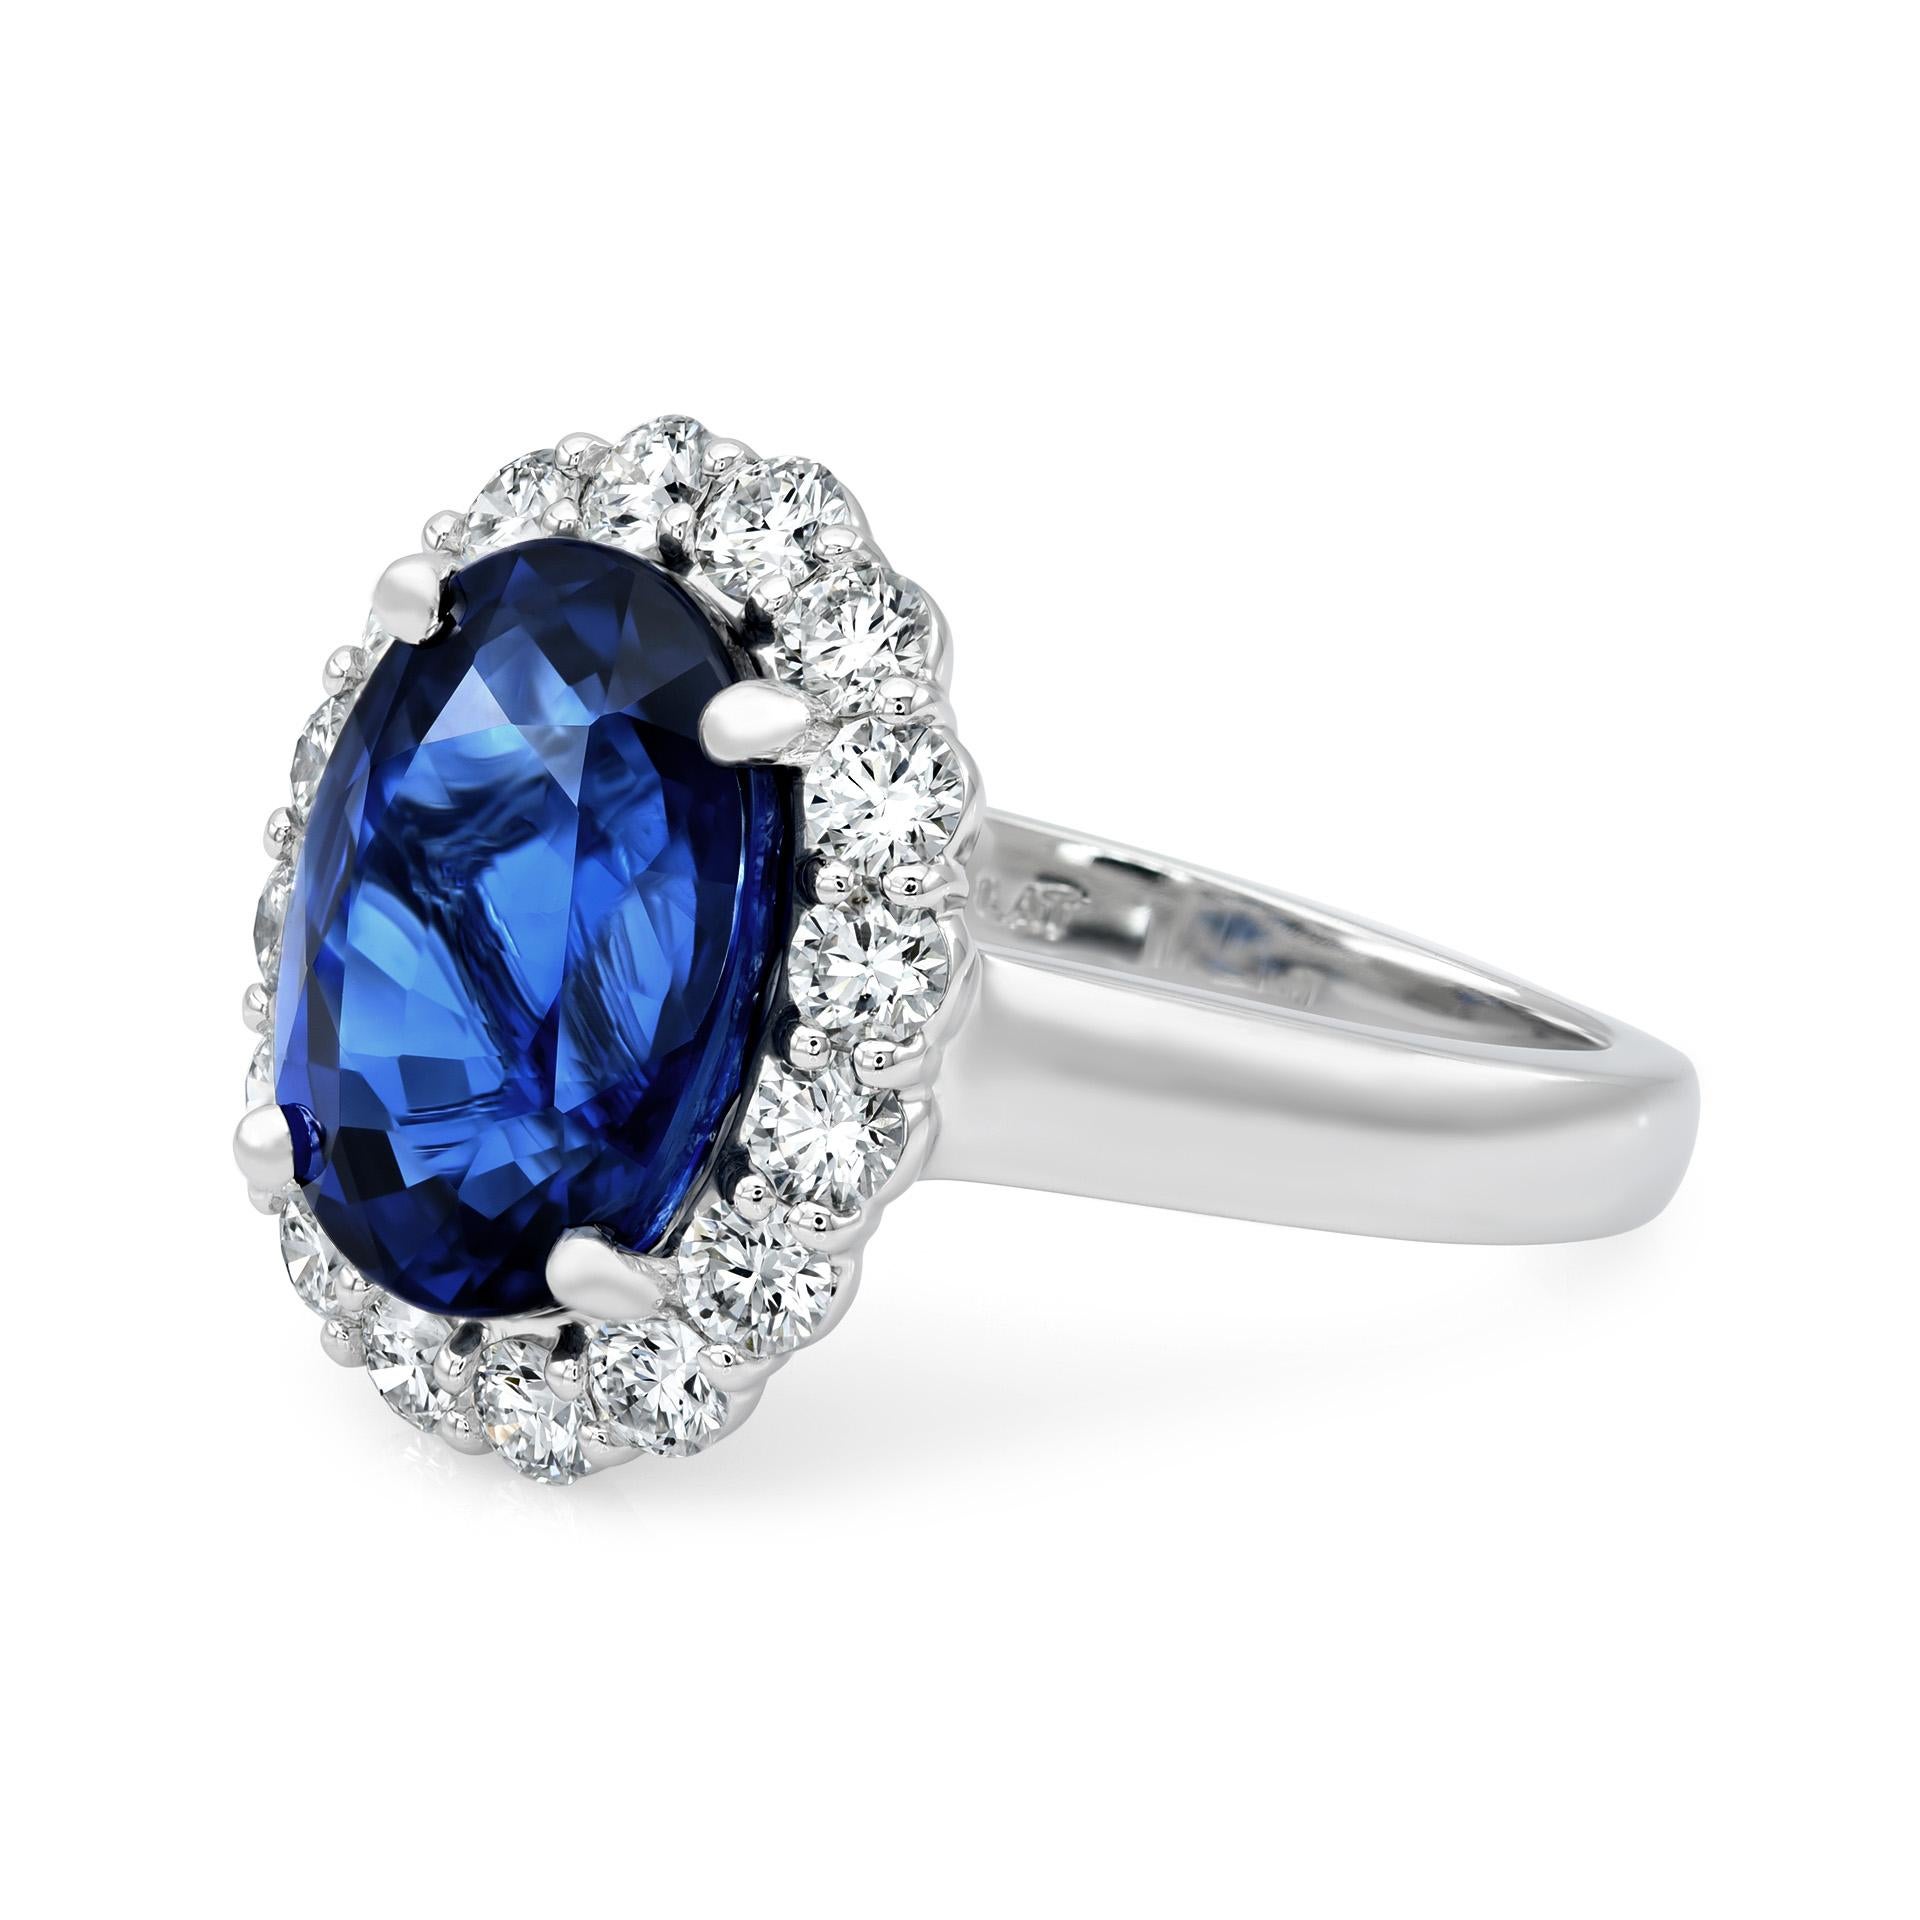 Erleben Sie die Verkörperung von Eleganz mit unserem exquisiten Ring mit blauem Saphir. Der atemberaubende blaue Saphir aus Sri Lanka mit einem Gewicht von 7,03 Karat ist in ein Platinband eingefasst, das mit 1,05 Karat funkelnden Diamanten